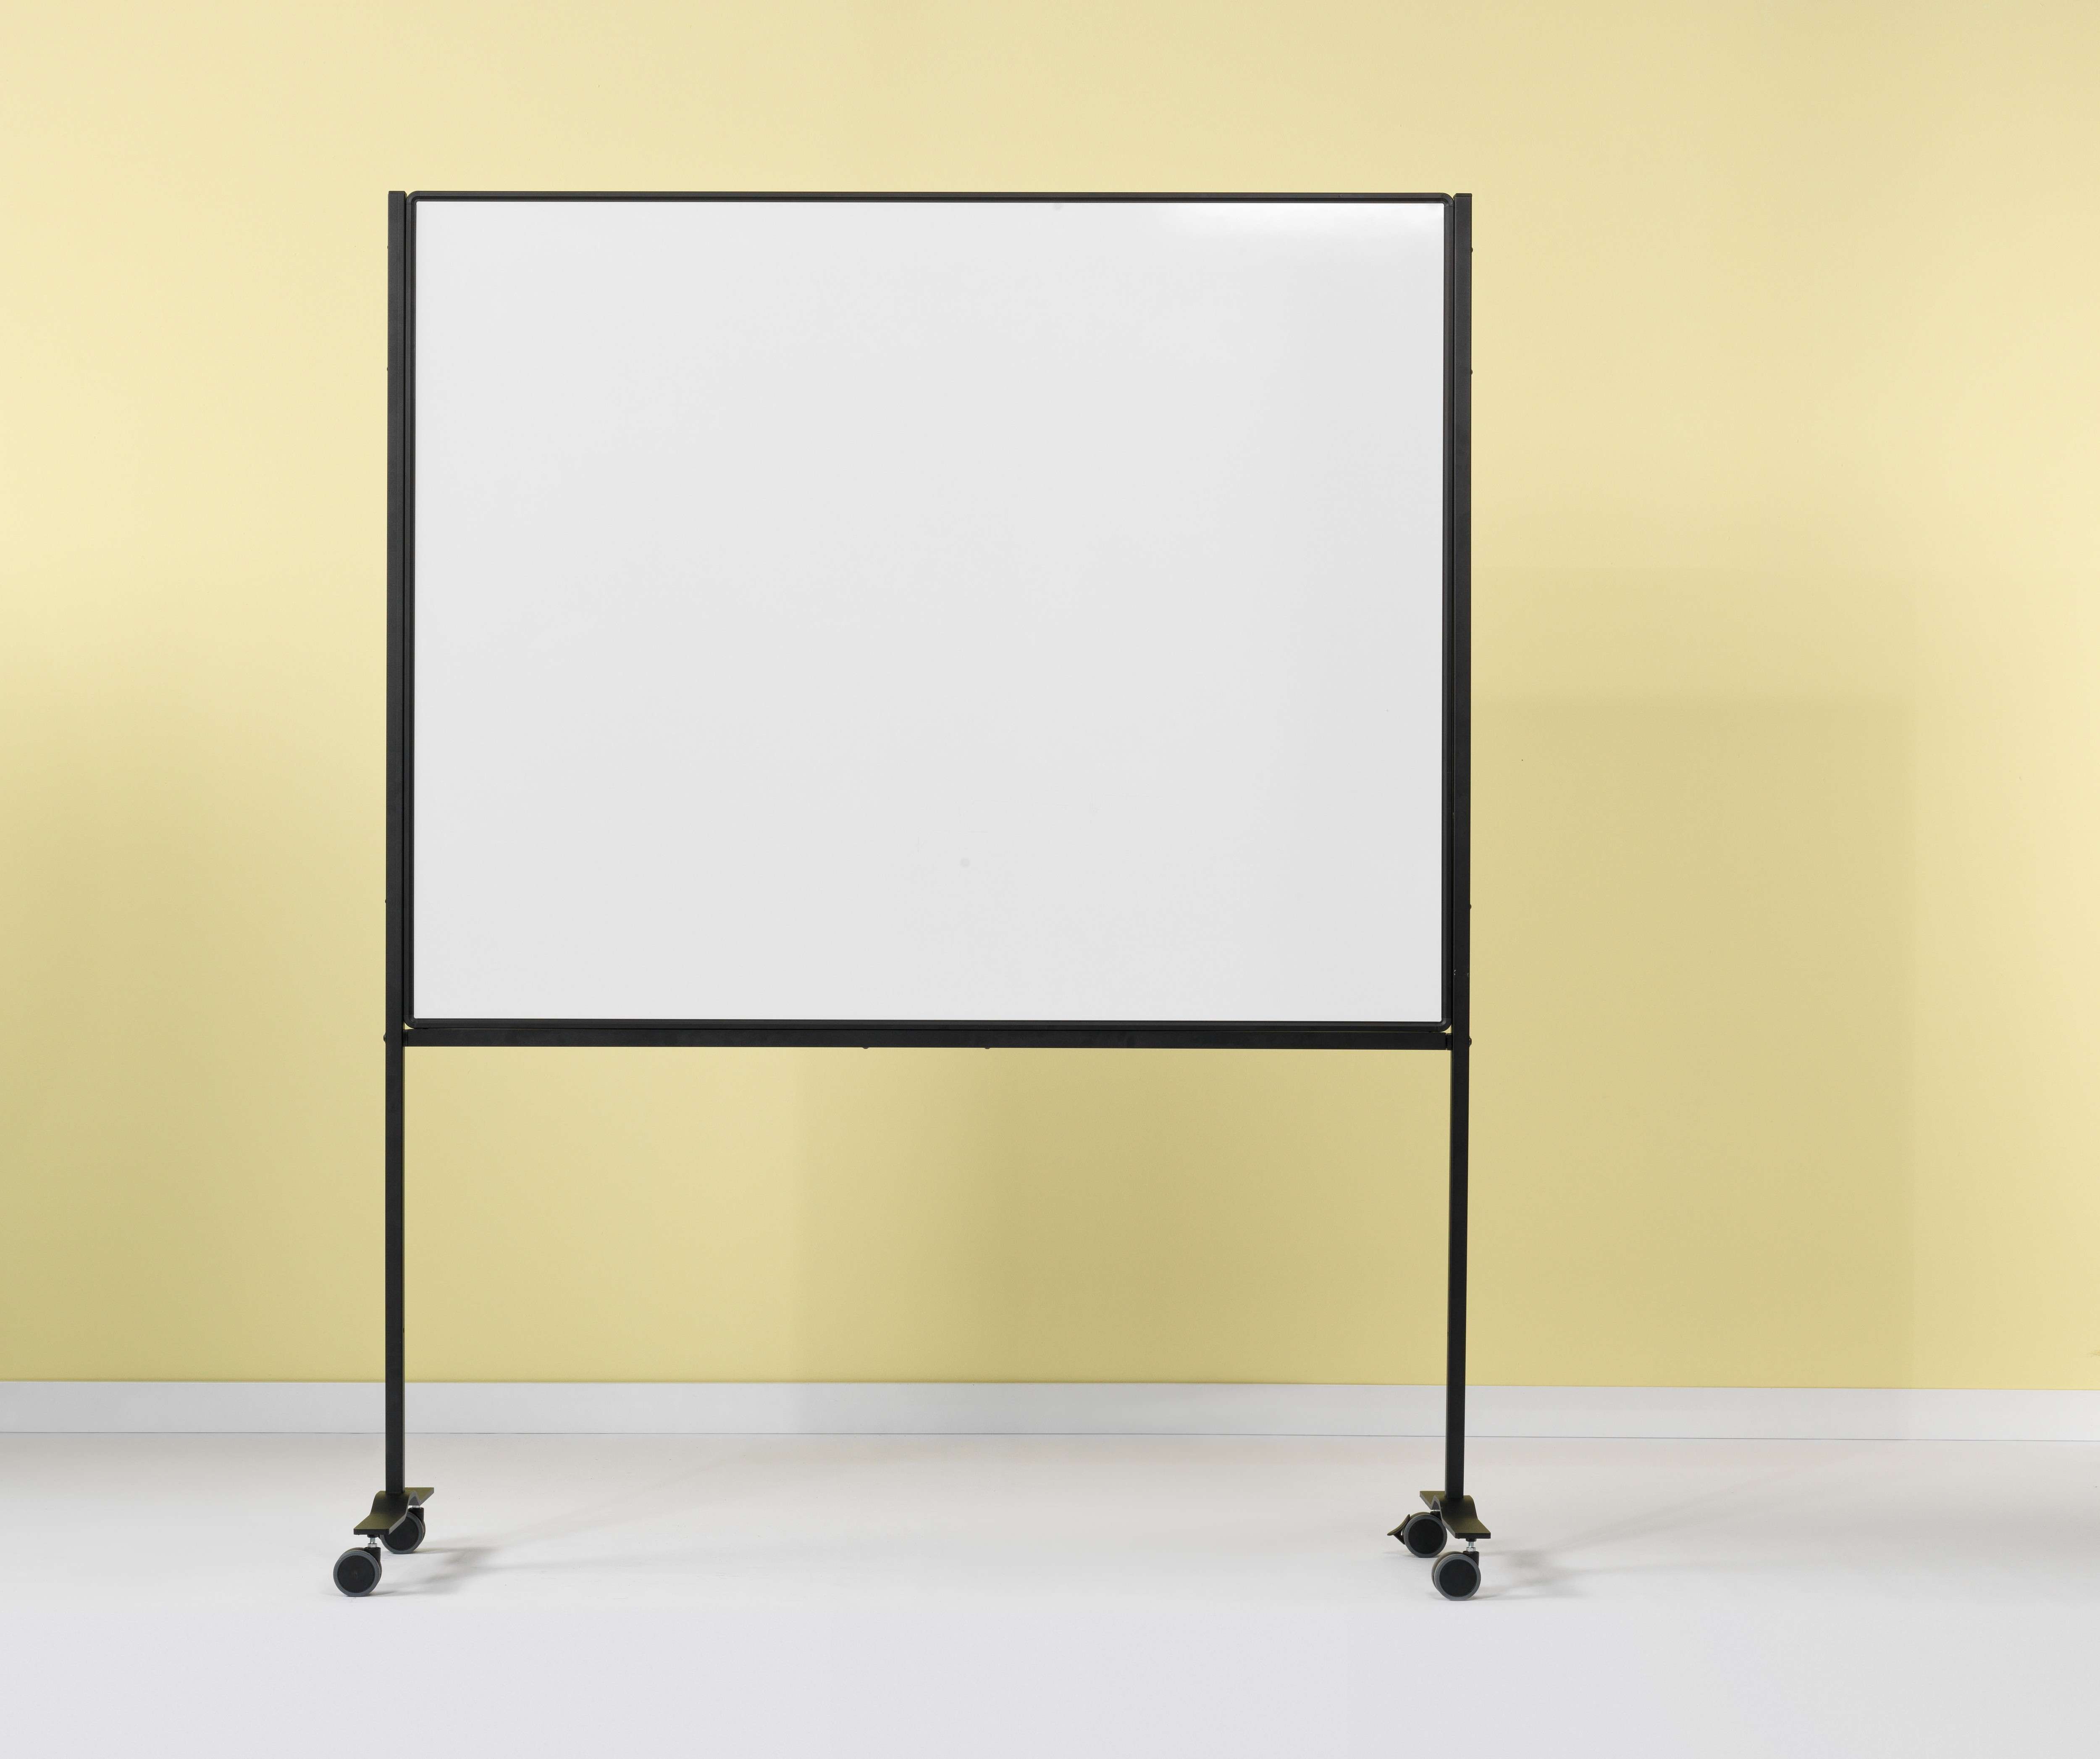 Magnetisches doppelseitiges Whiteboard für intensive Nutzung | HxB 120x150cm | inkl. schwarzer Stahlrahmen & 4x Rollen | Emaillierter Stahl | Schwarz/Weiß